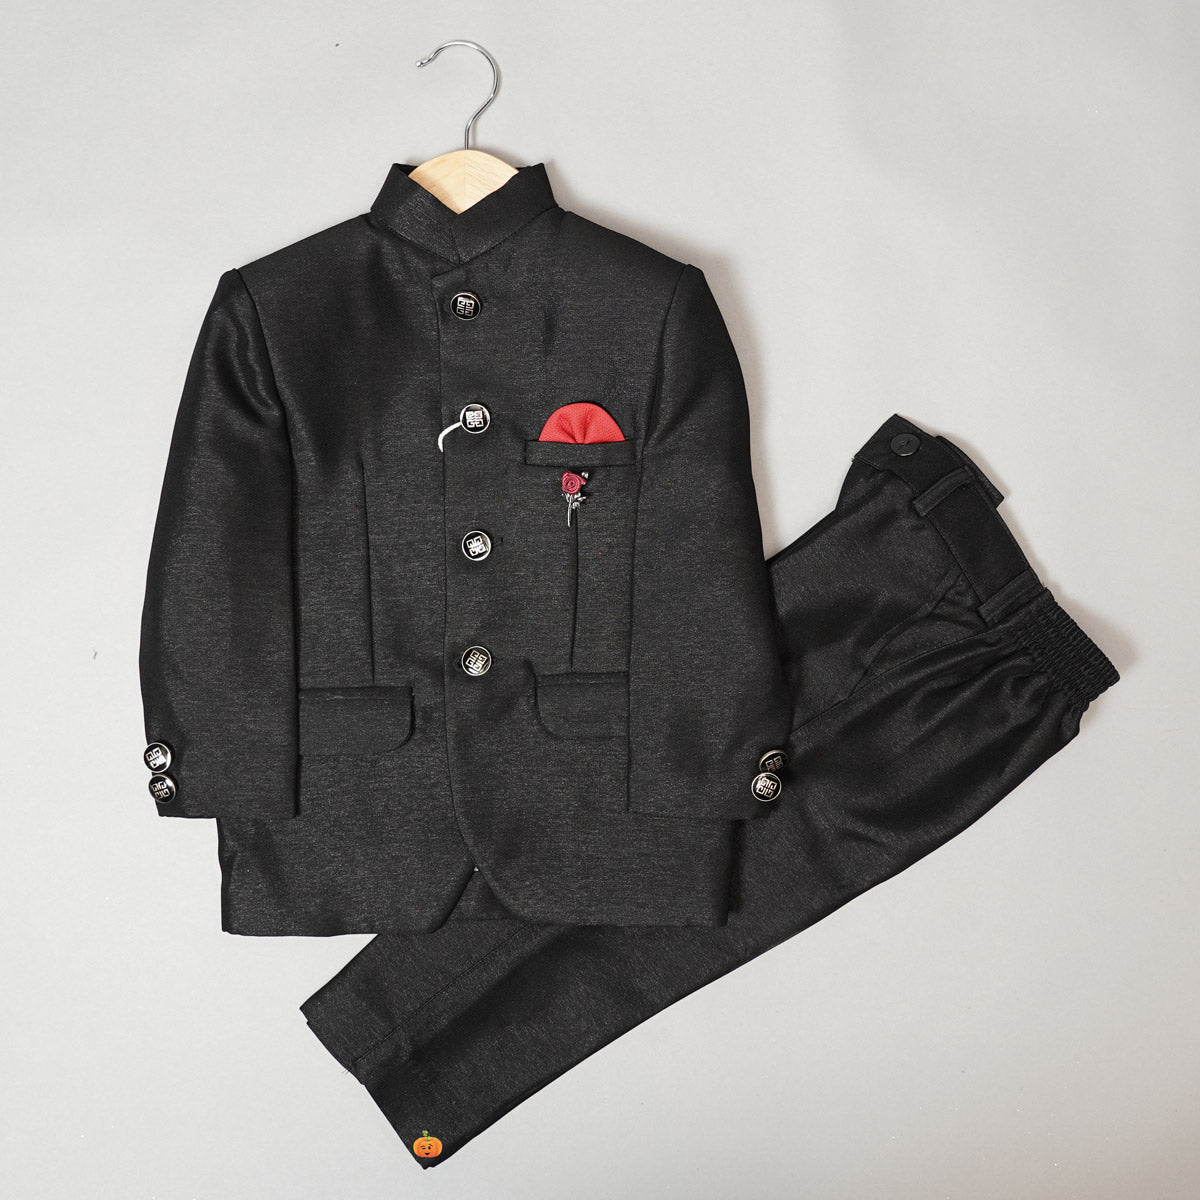 jodhpuri suit for kids bs114533 black 1